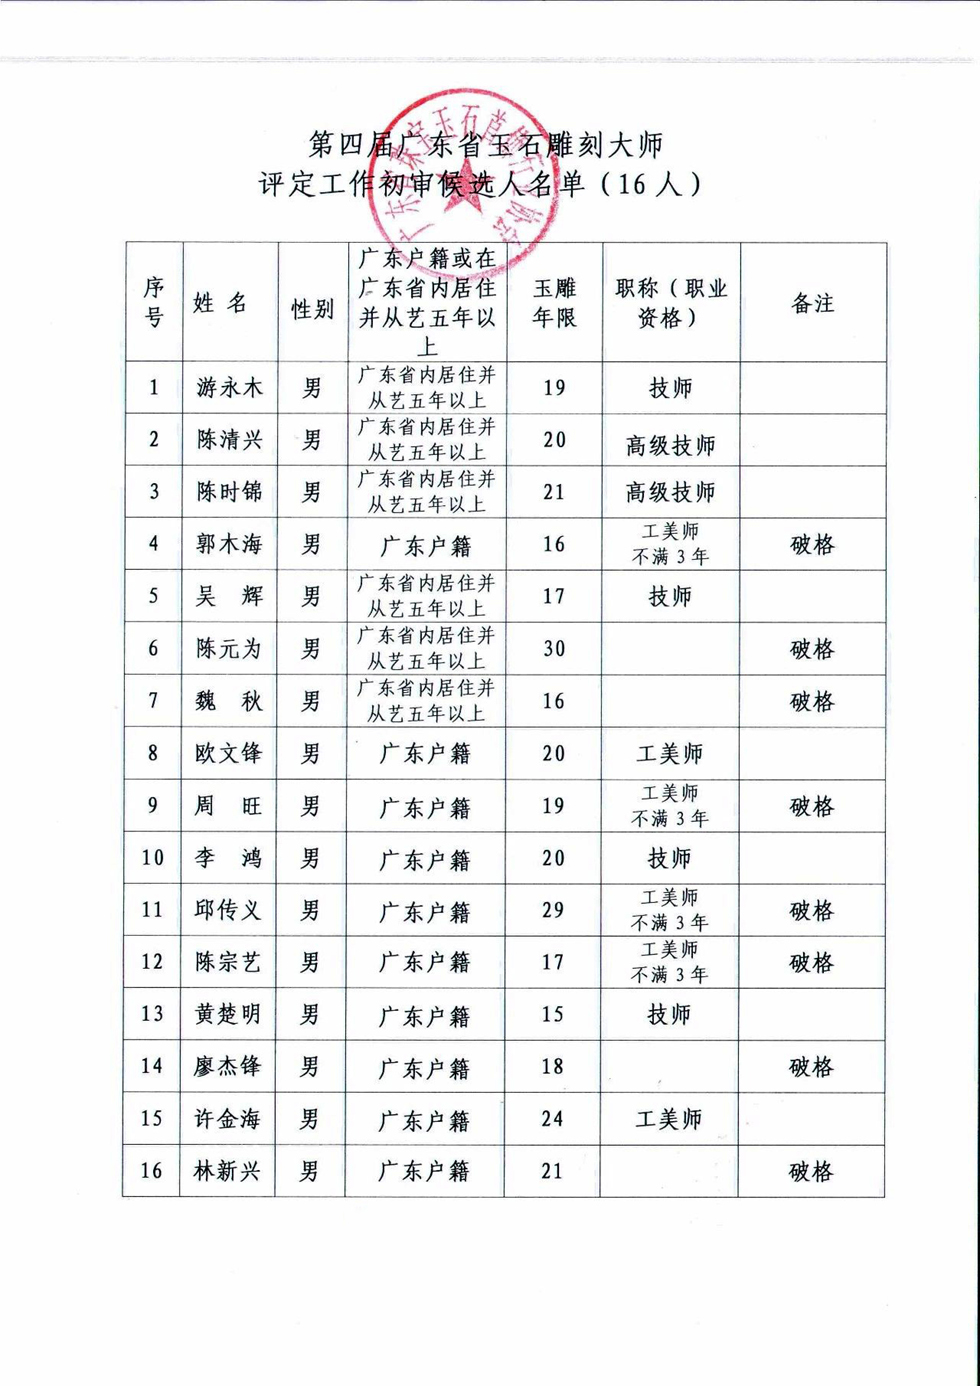 关于第四届广东省玉石雕刻大师评定初审候选人通过名单的公示 (2).jpg